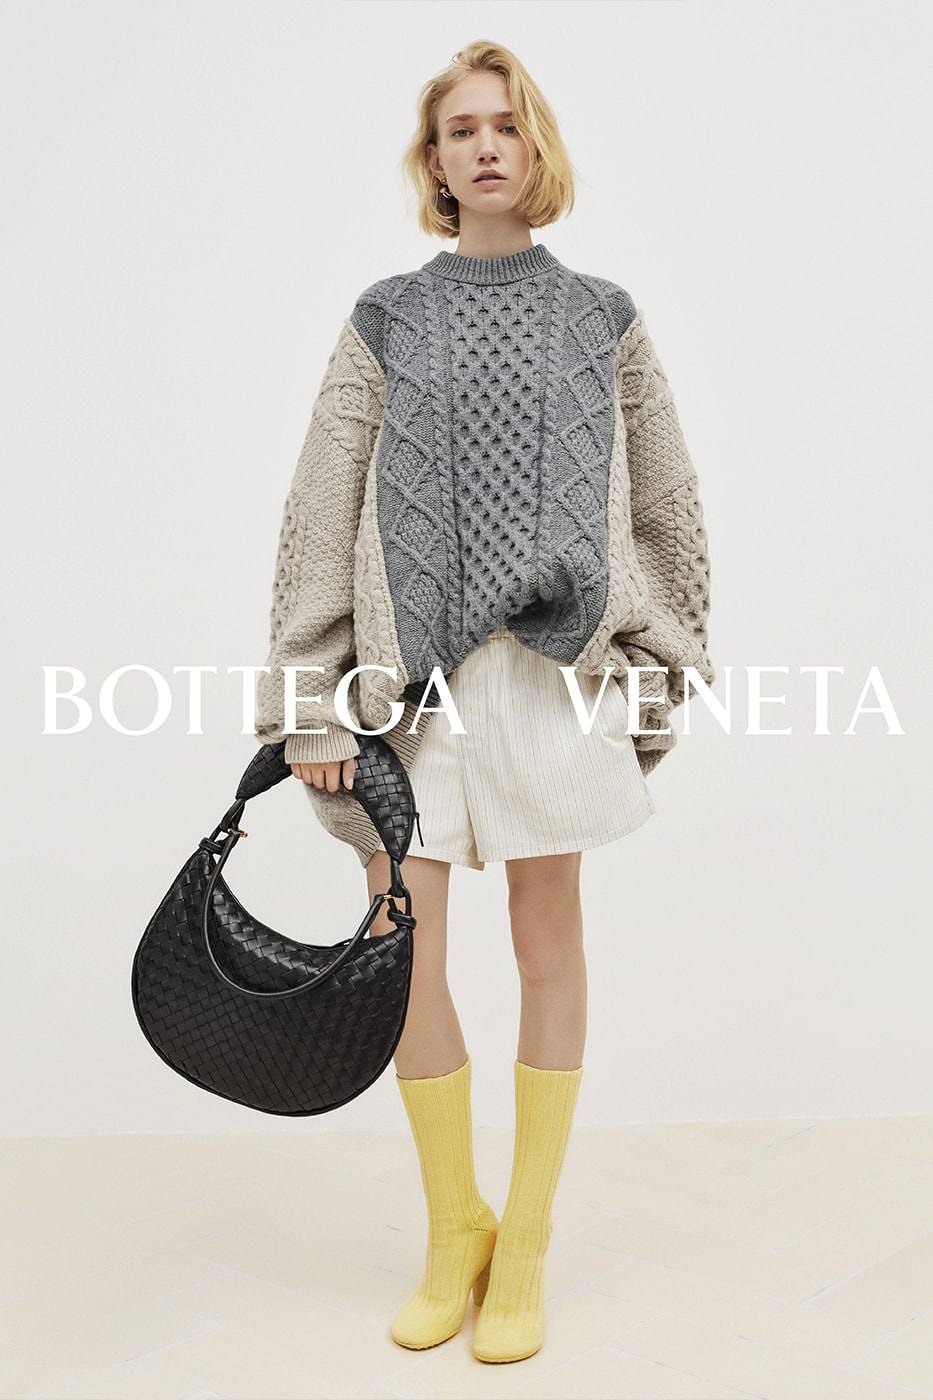 Bộ sưu tập đẹp như giấc mơ của Bottega Veneta - 1